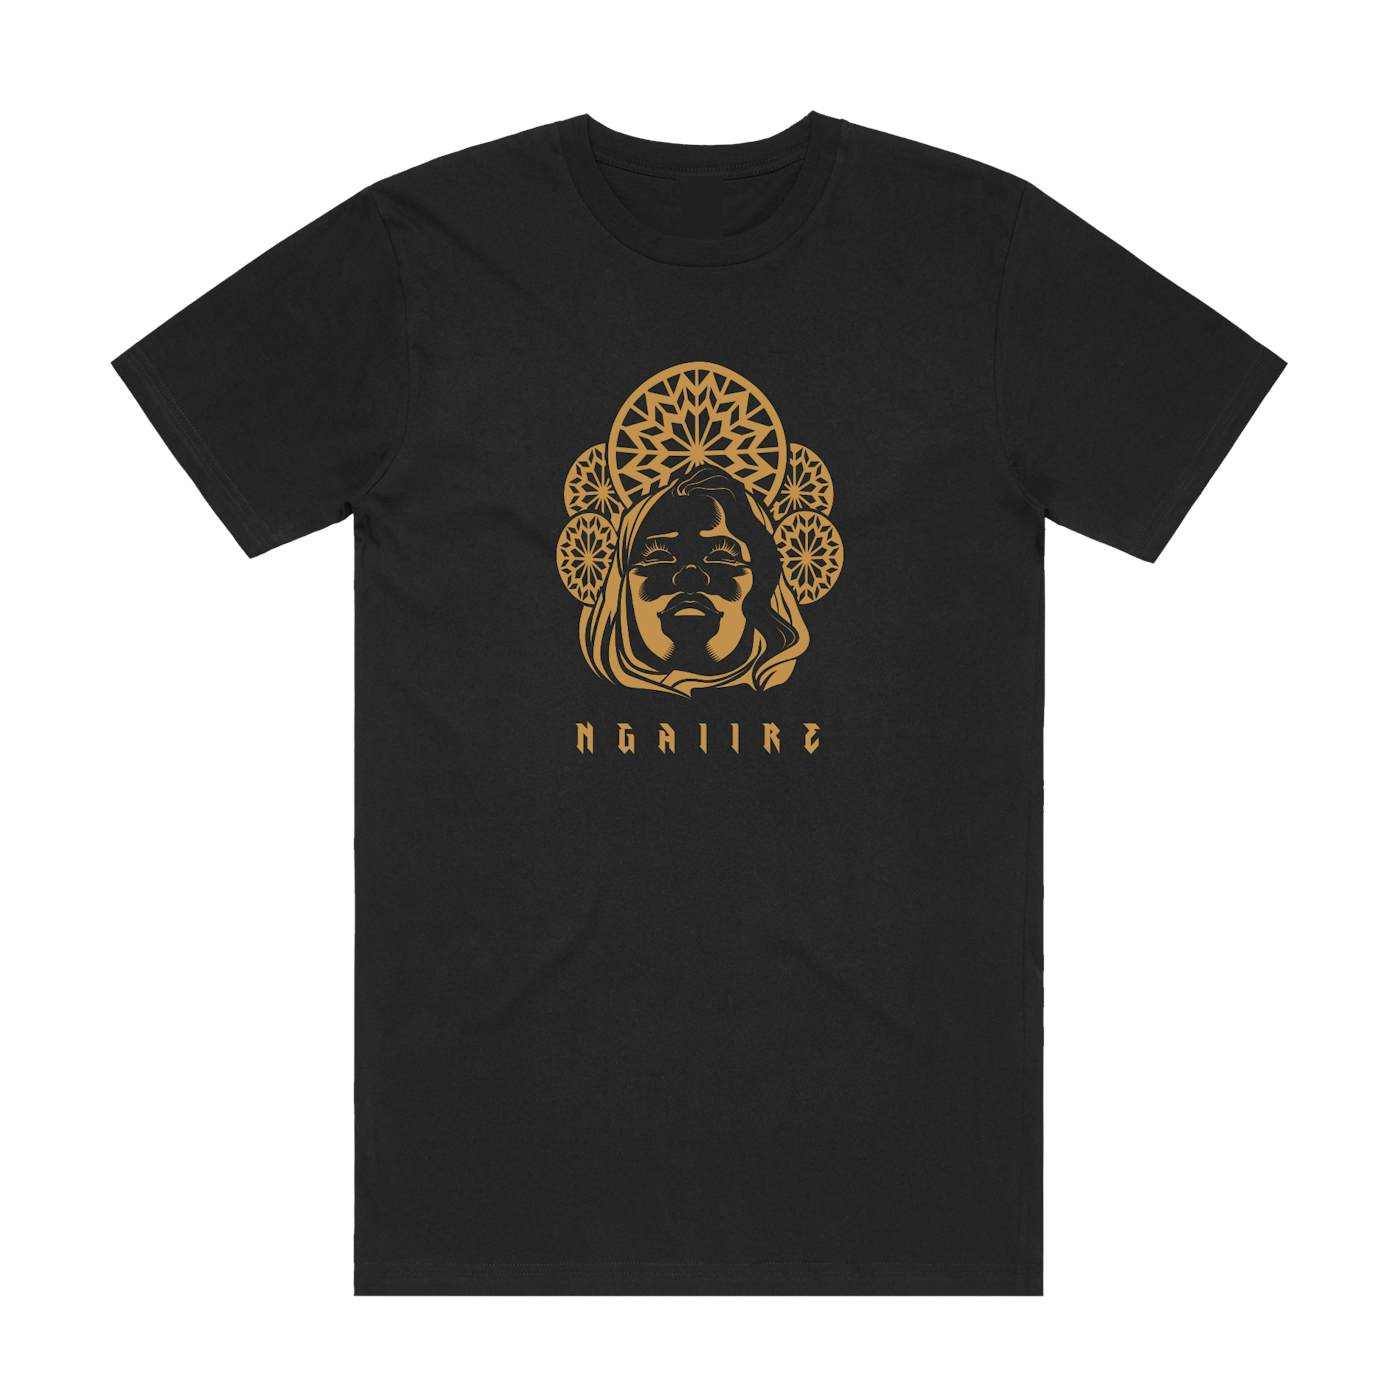 Ngaiire | Queen T-Shirt